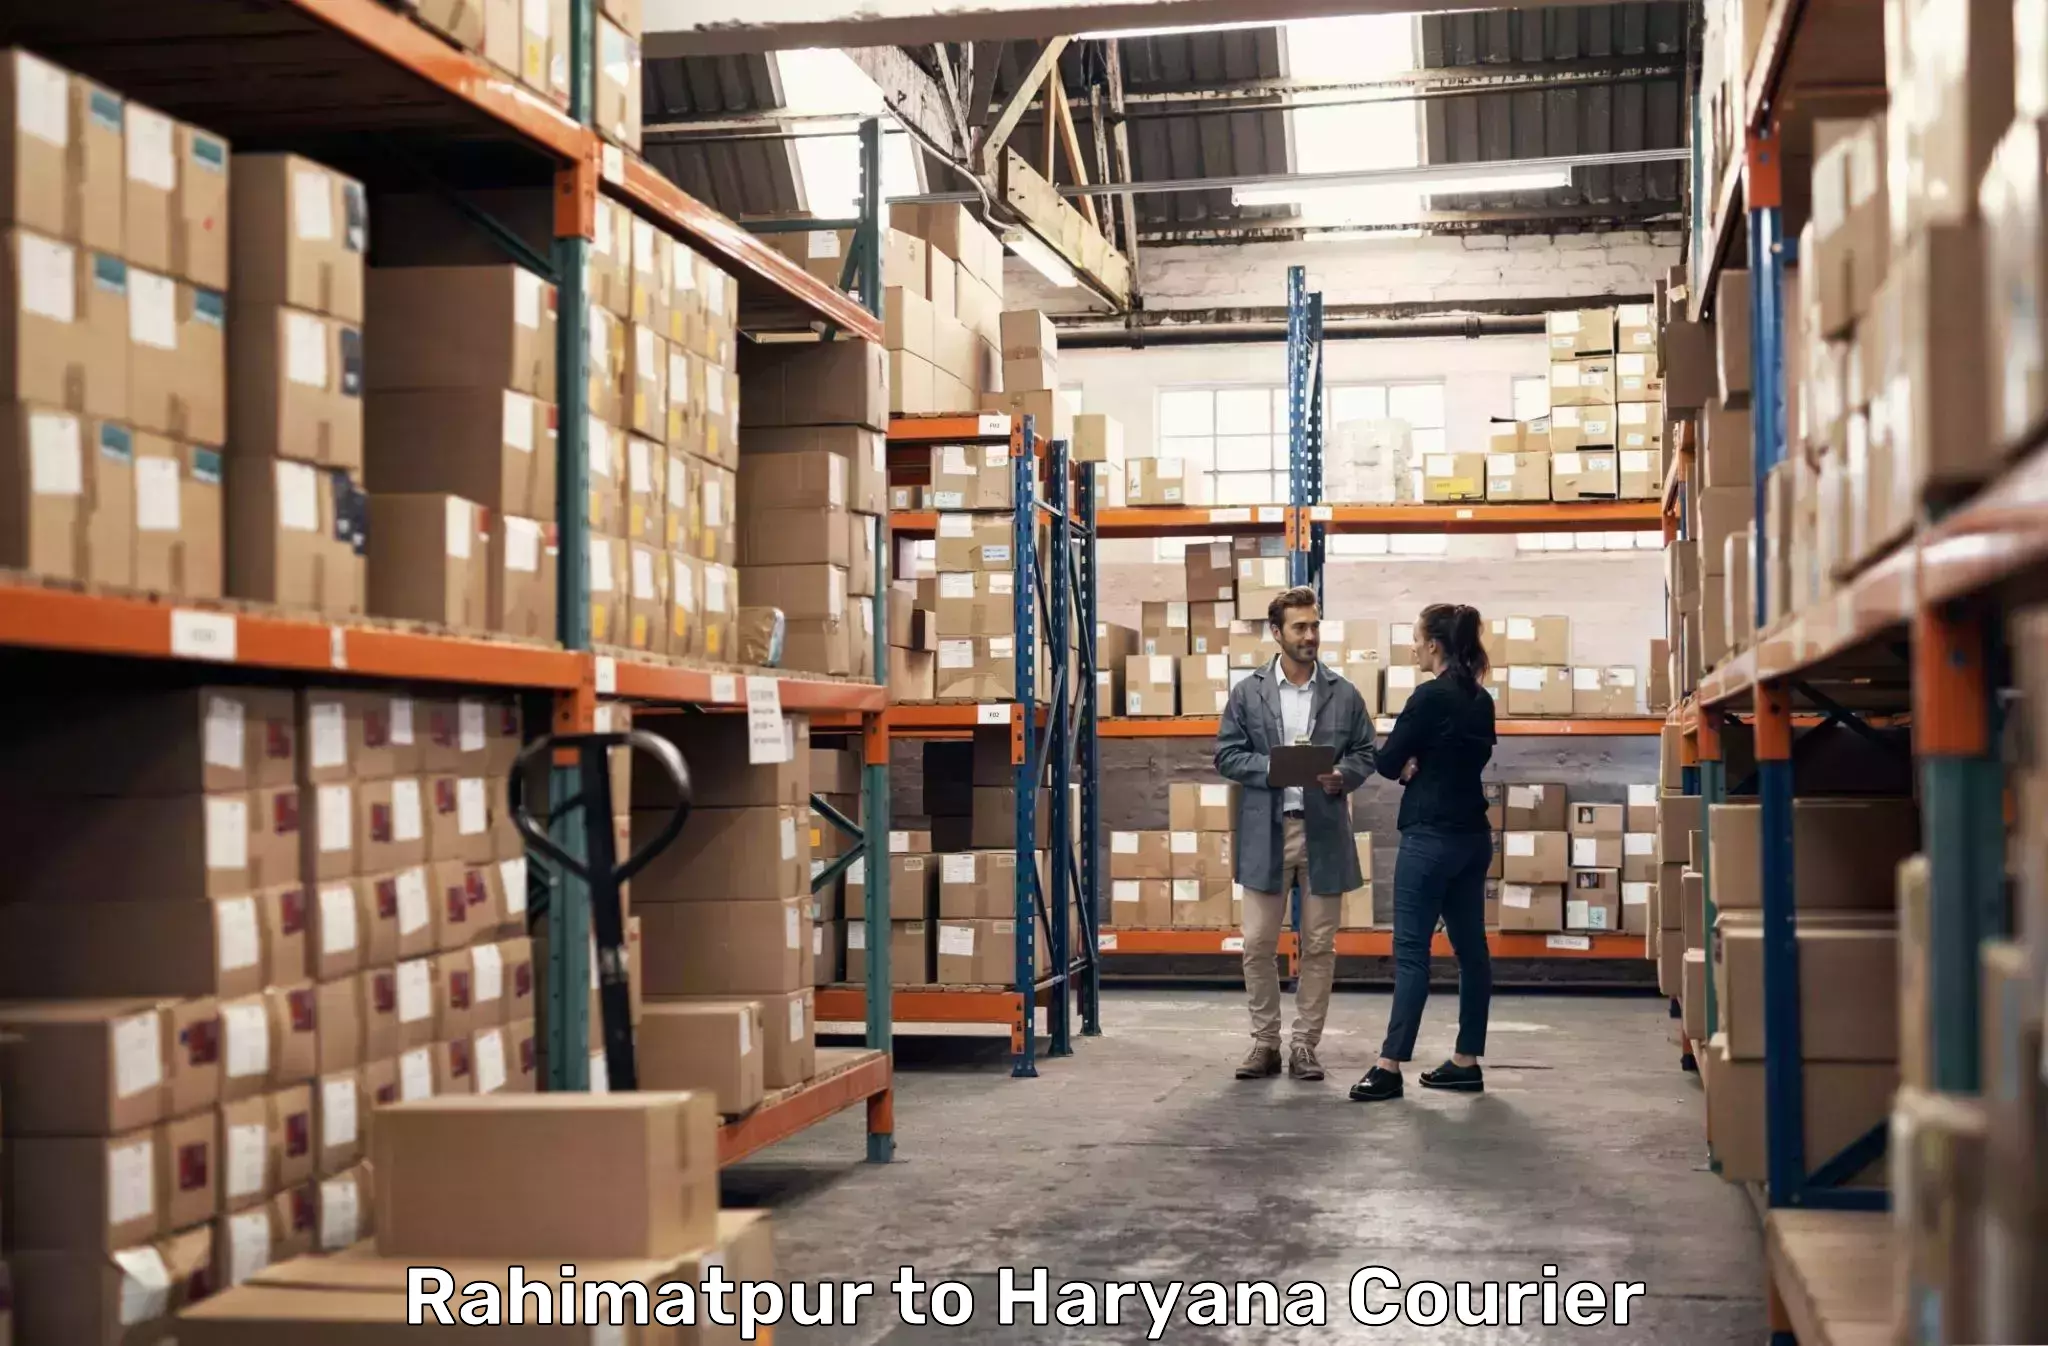 Cargo courier service Rahimatpur to Shahabad Markanda